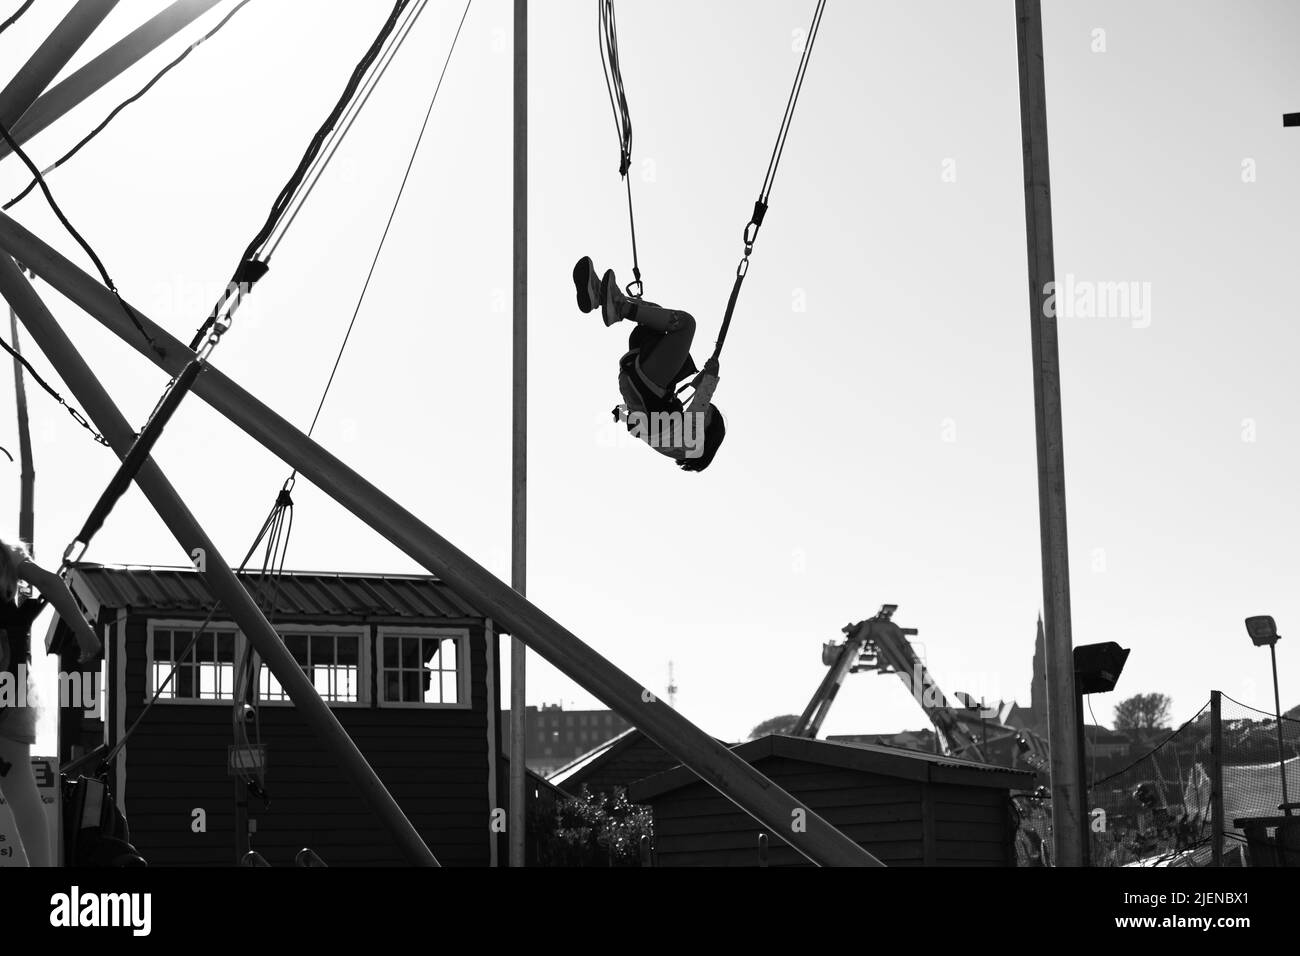 Mädchen springen in einem Vergnügungspark Looping und Spaß haben. Schwarz-Weiß-Fotografie. Tramore, Irland Stockfoto